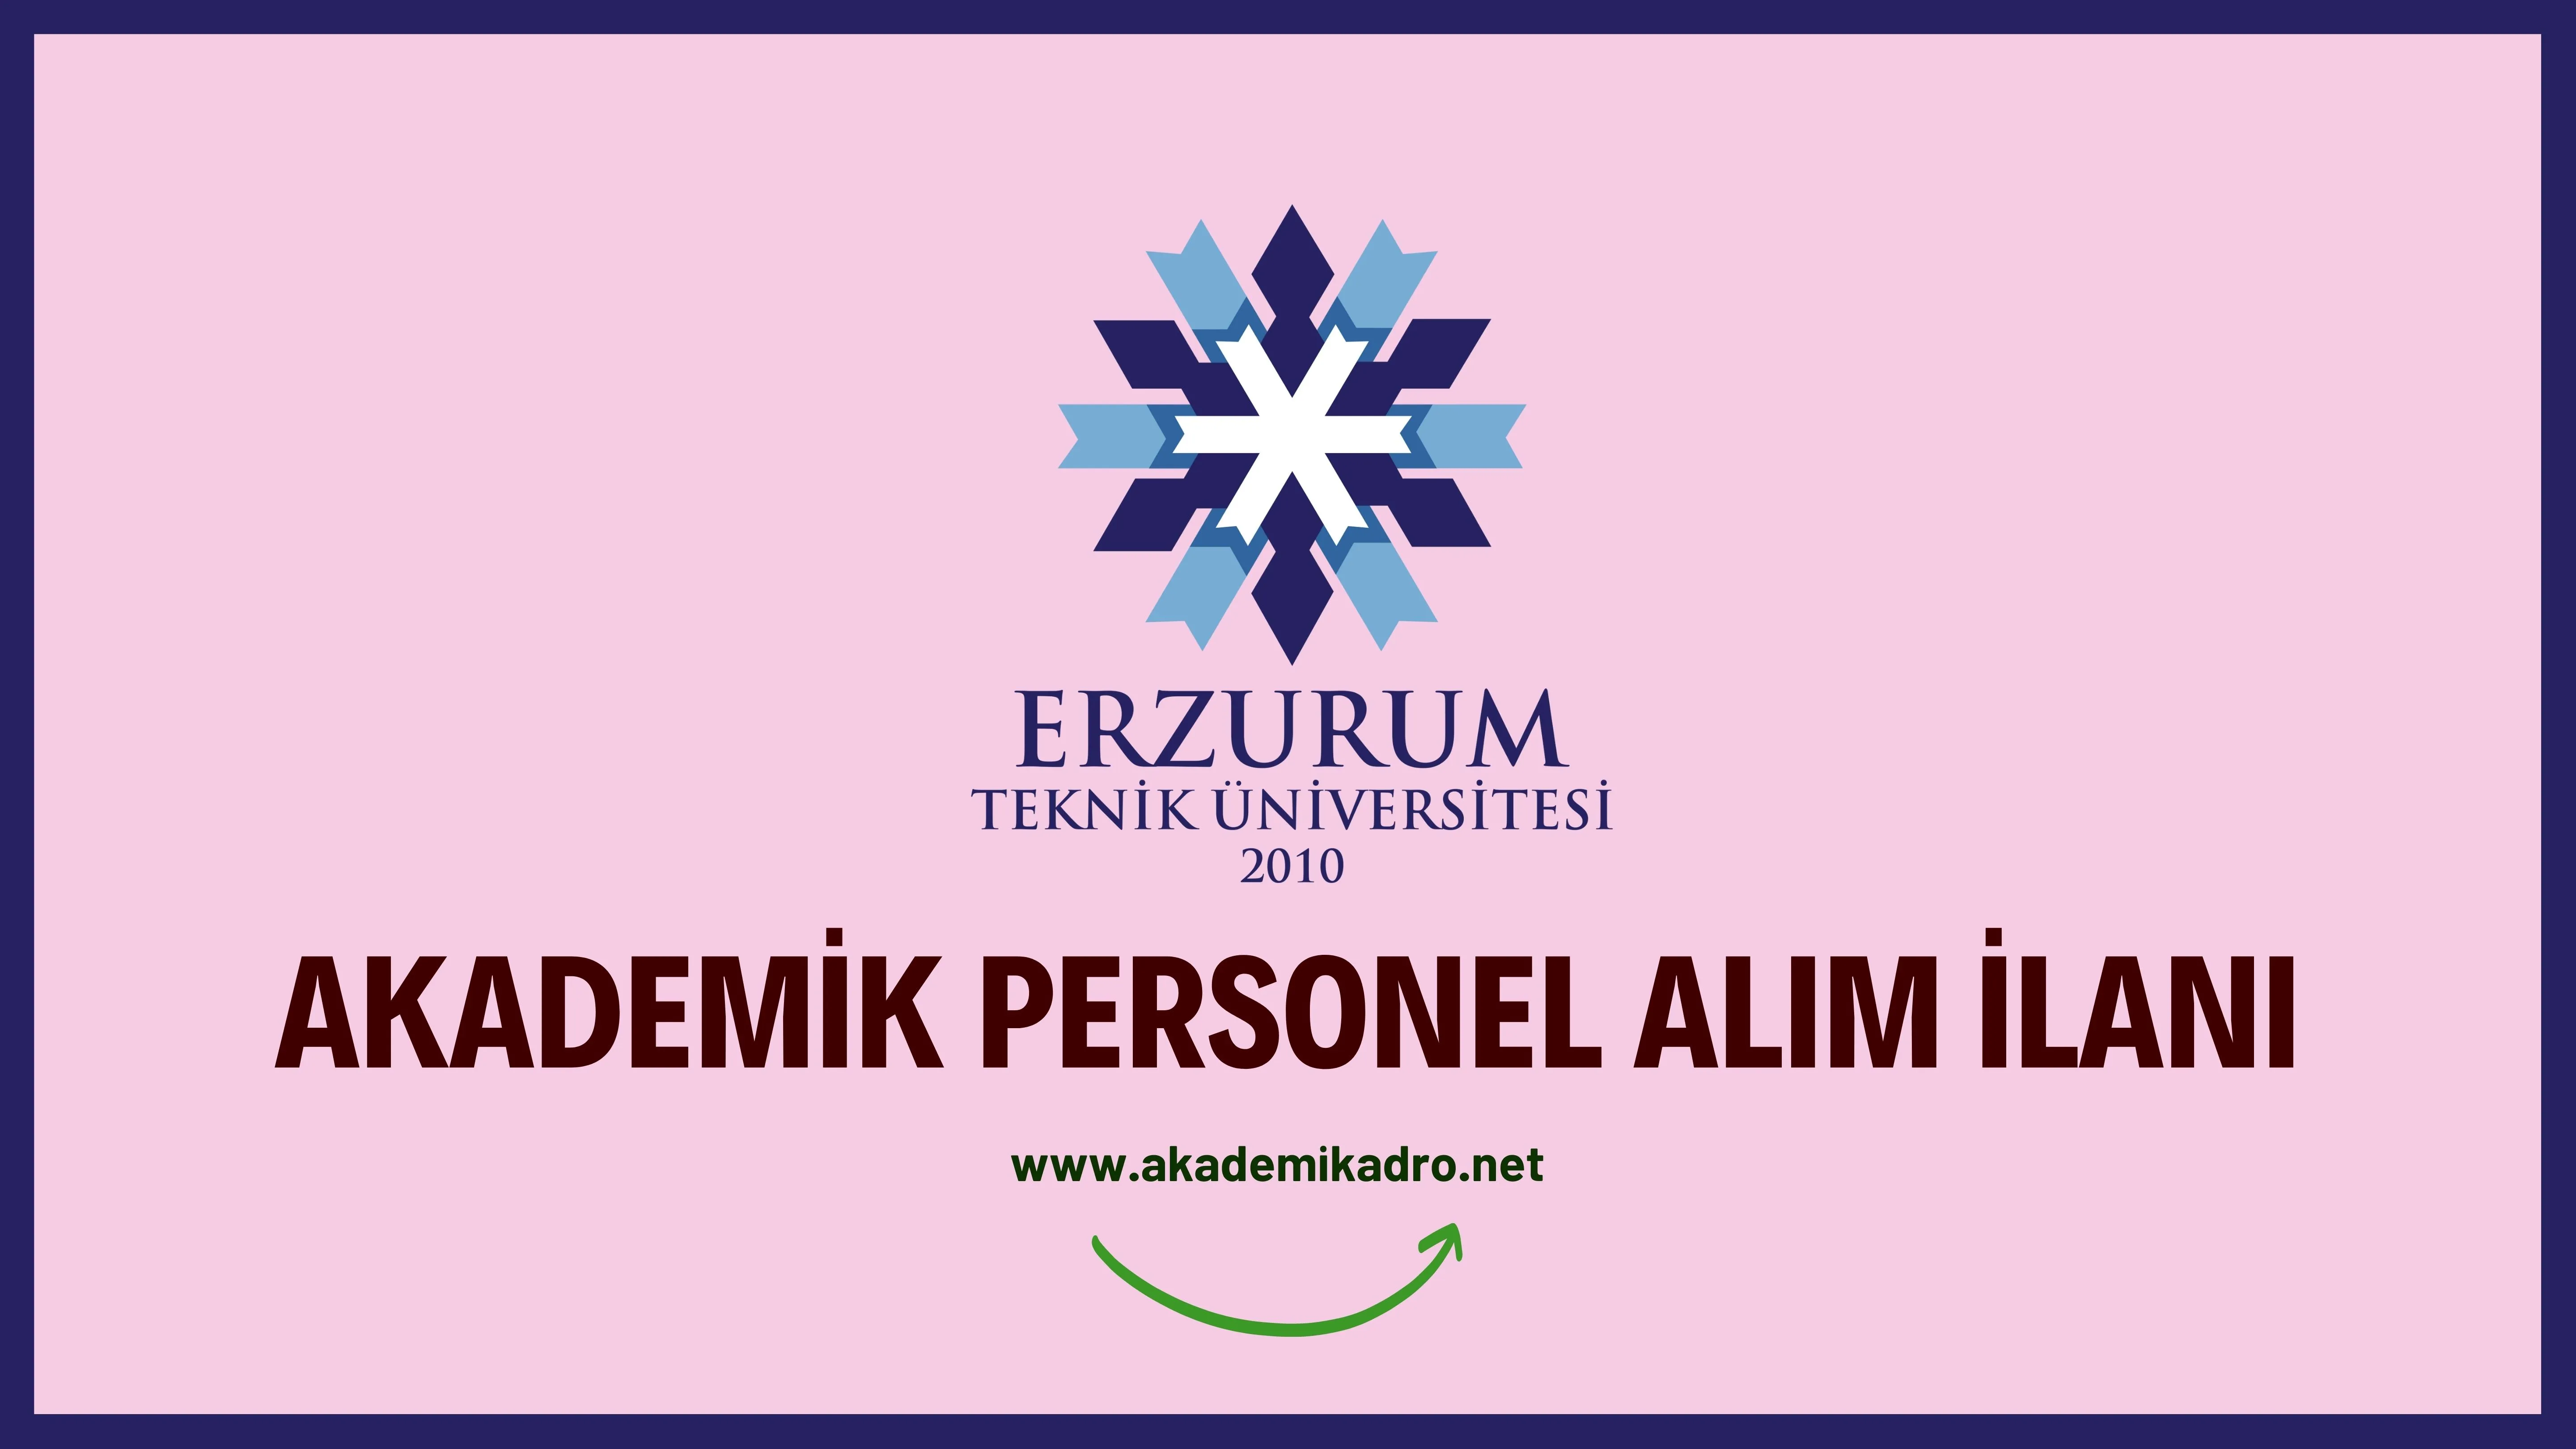 Erzurum Teknik Üniversitesi birçok alandan 12 akademik personel alacak. Son başvuru tarihi 02 Ocak 2023.